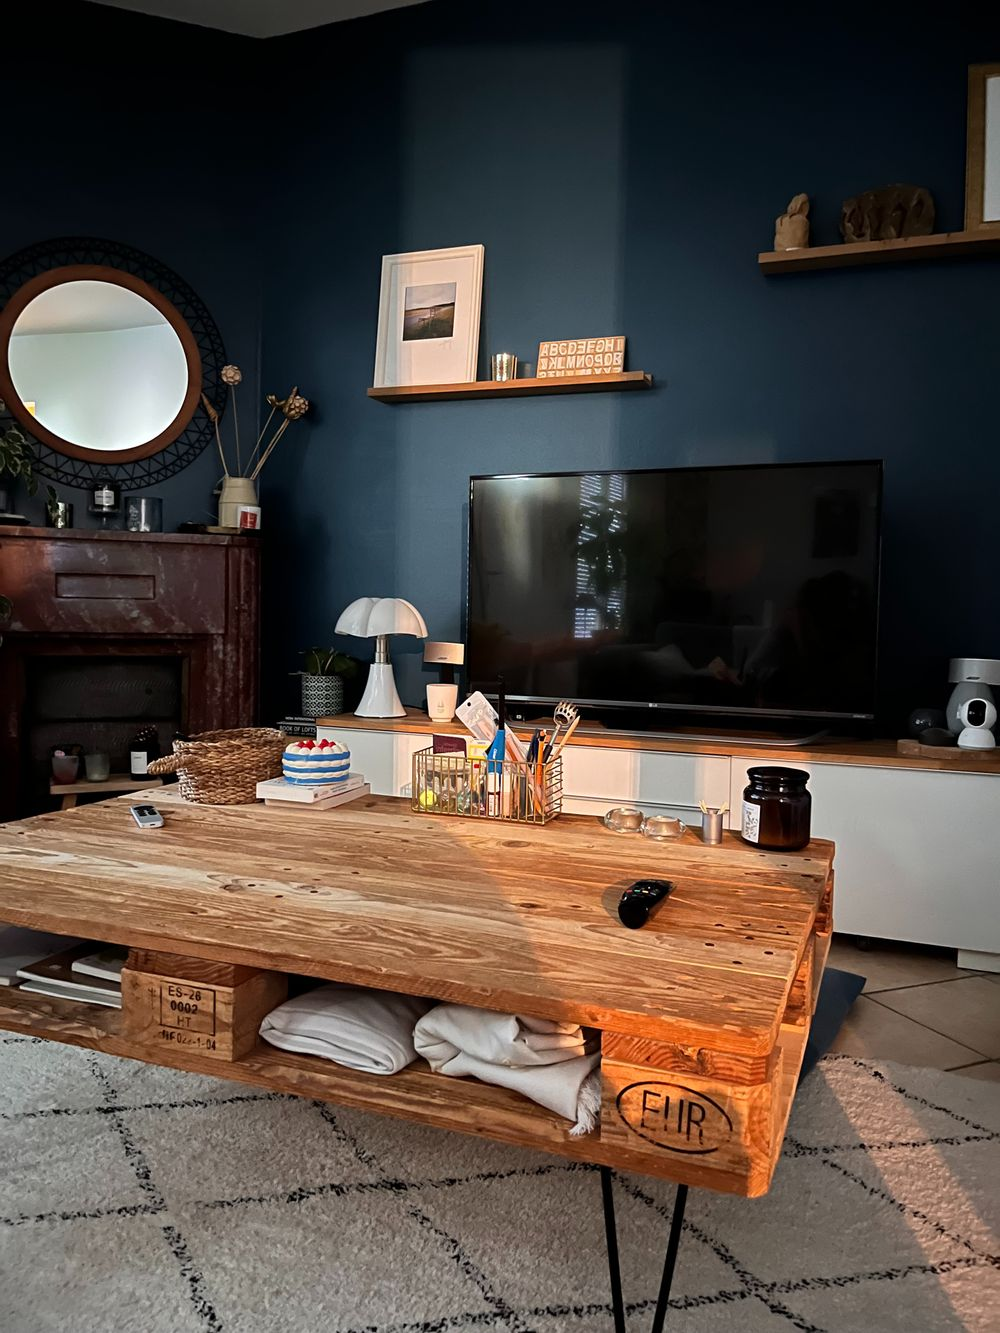 деревянный журнальный столик перед телевизором